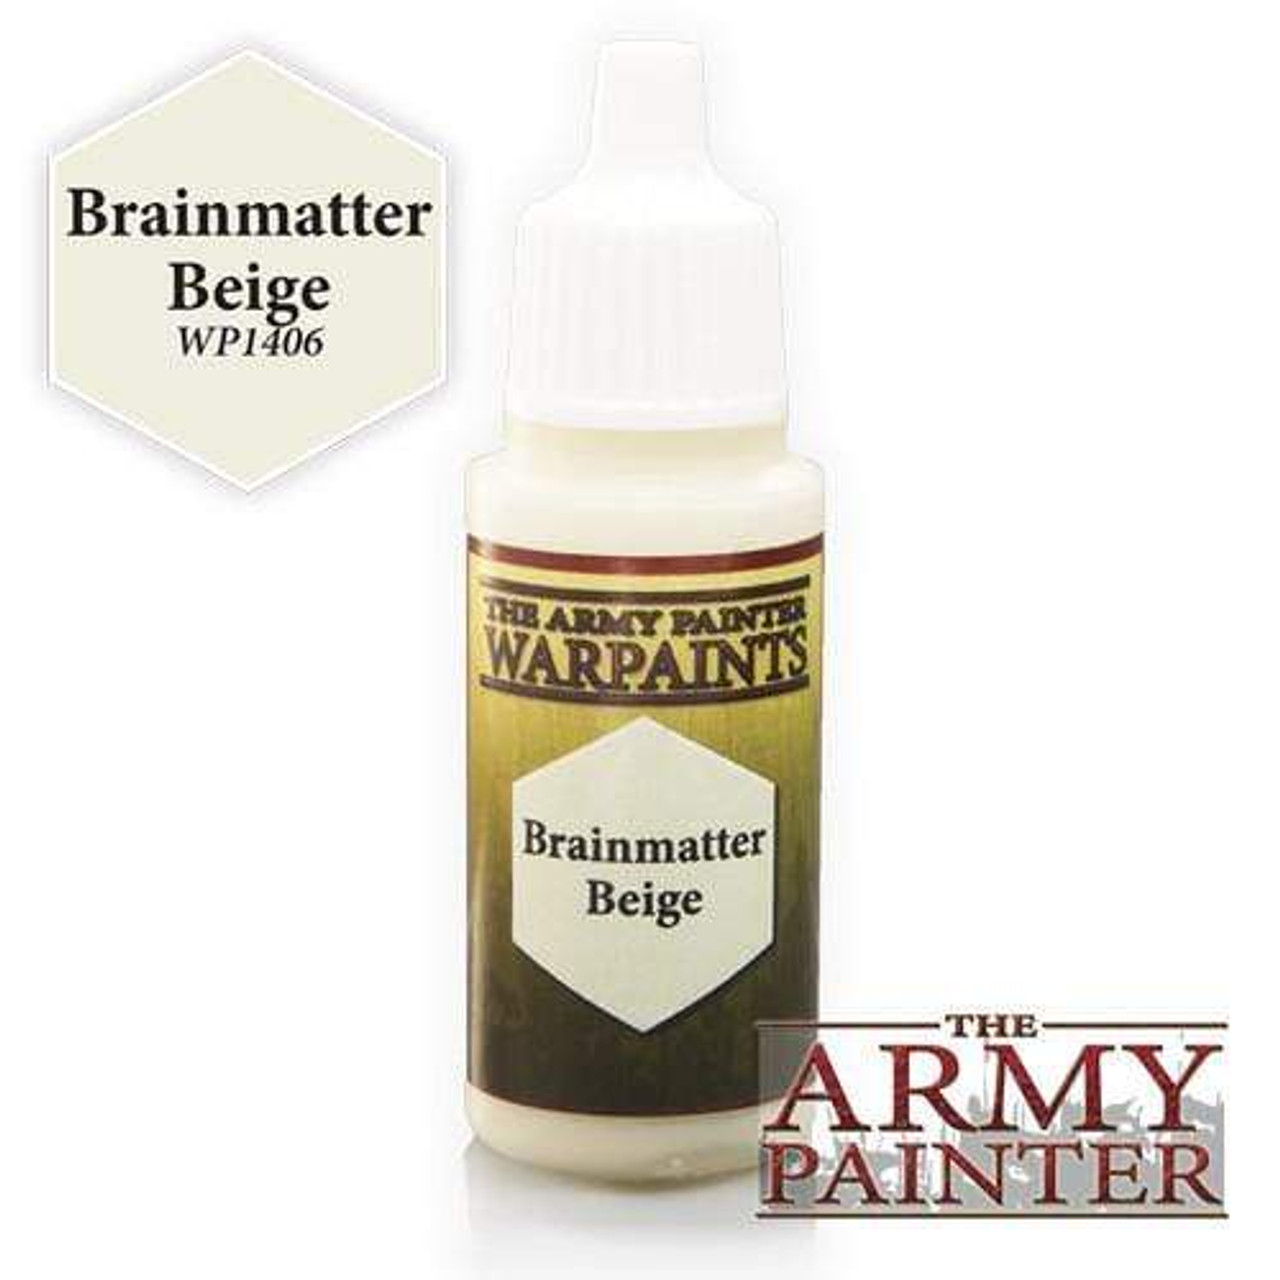 Army Painter Warpaint: Brainmatter Beige